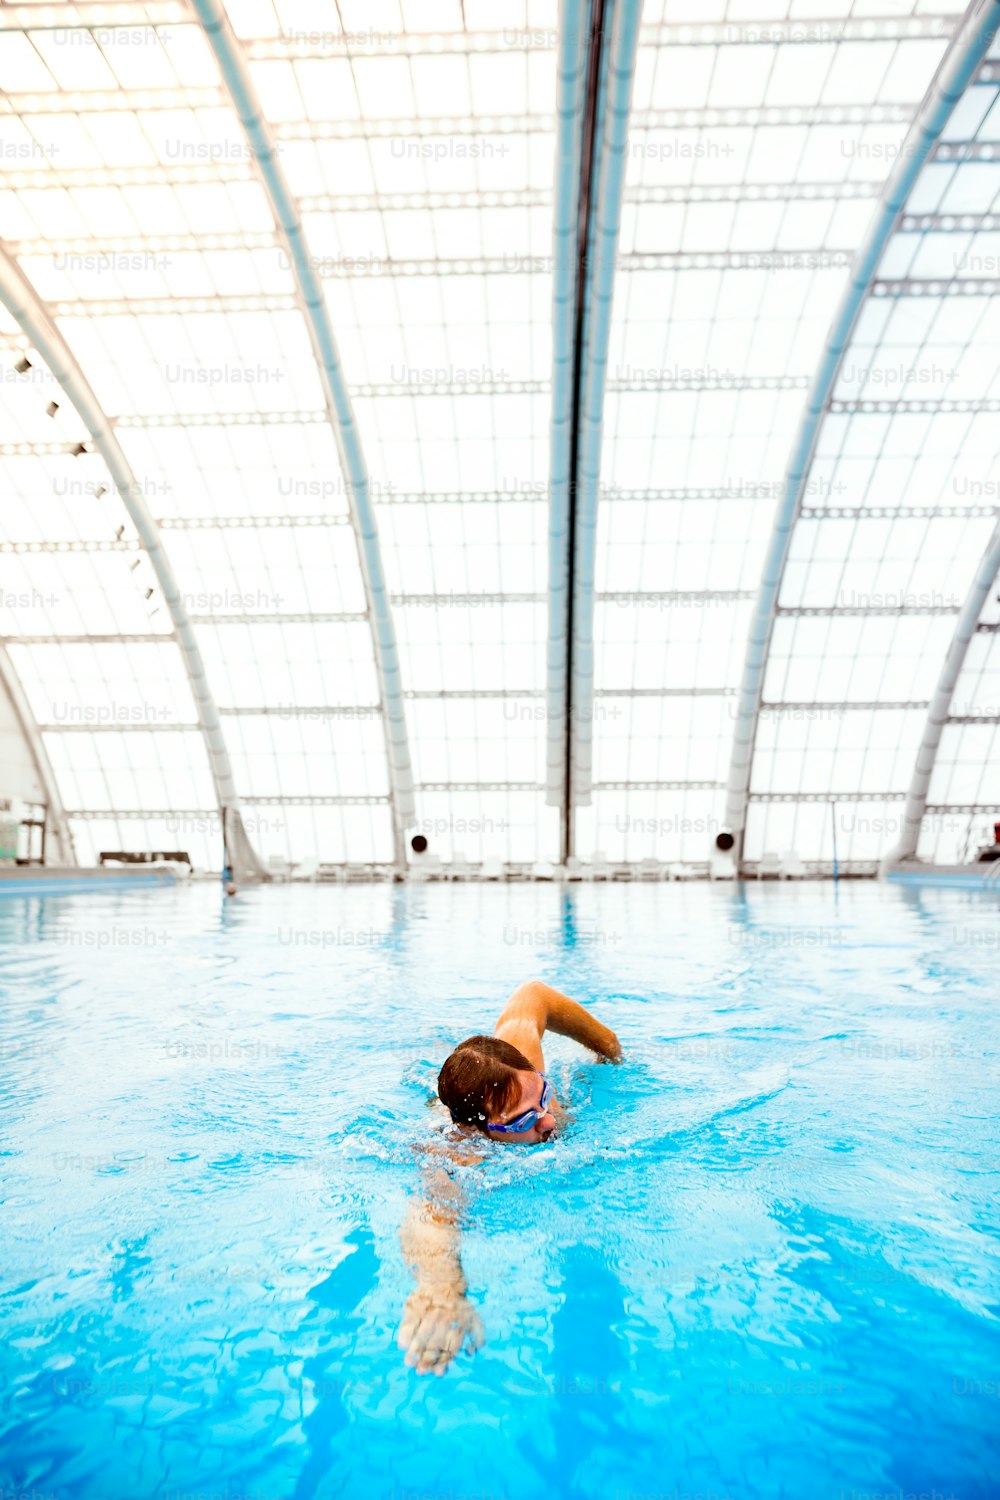 Homme nageant dans une piscine intérieure. Nageur professionnel pratiquant en piscine.